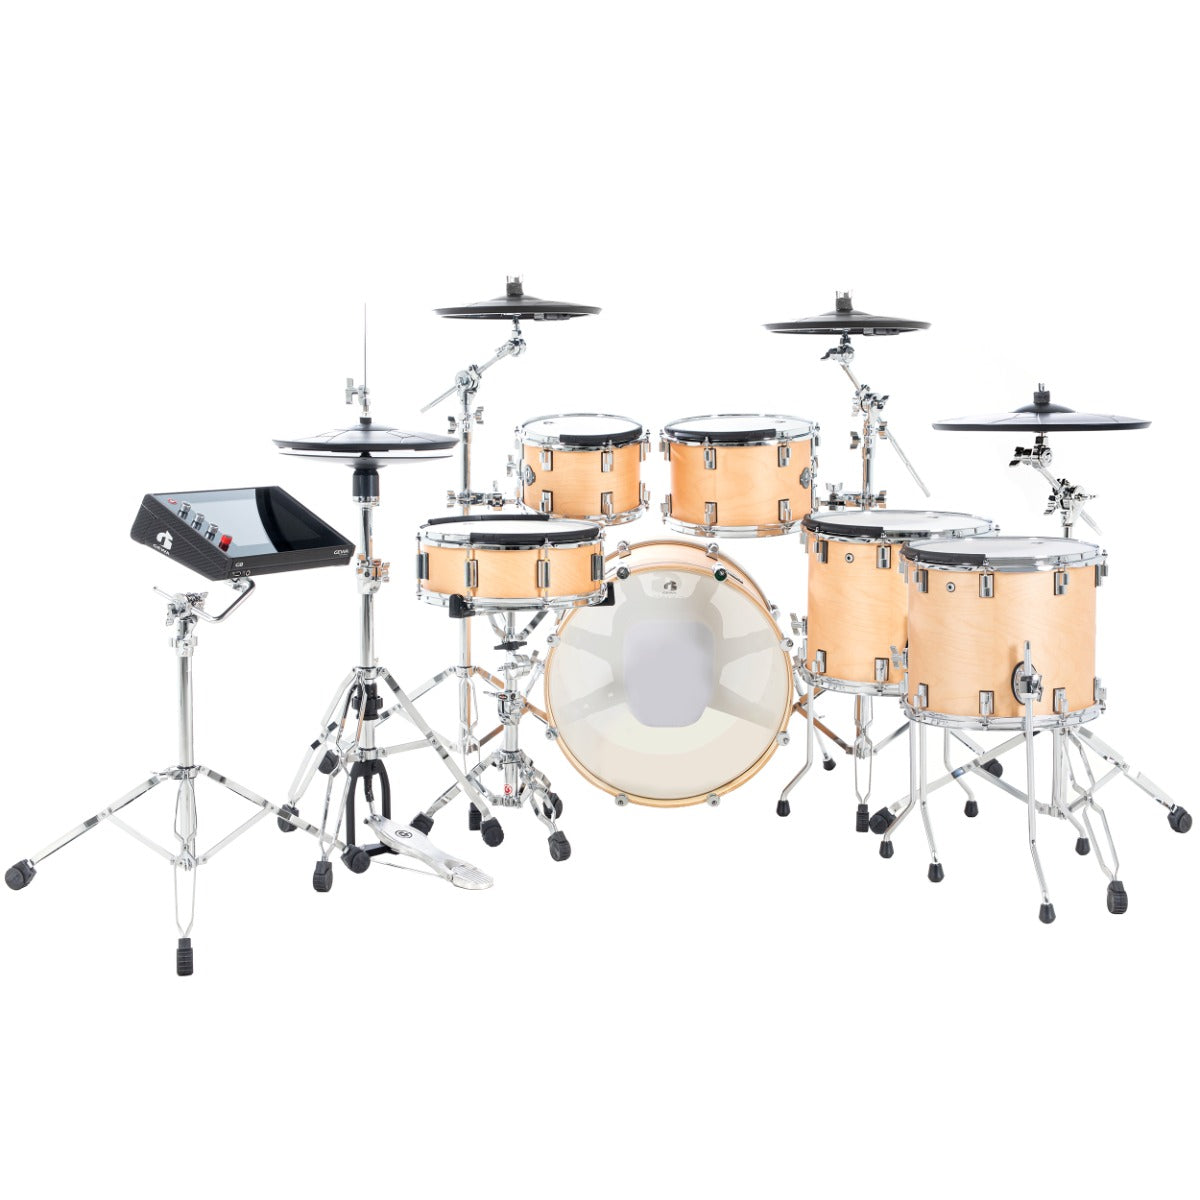 GEWA G9 Pro 5 SE 6-Piece Electronic Drum Set - Satin Natural, view 2